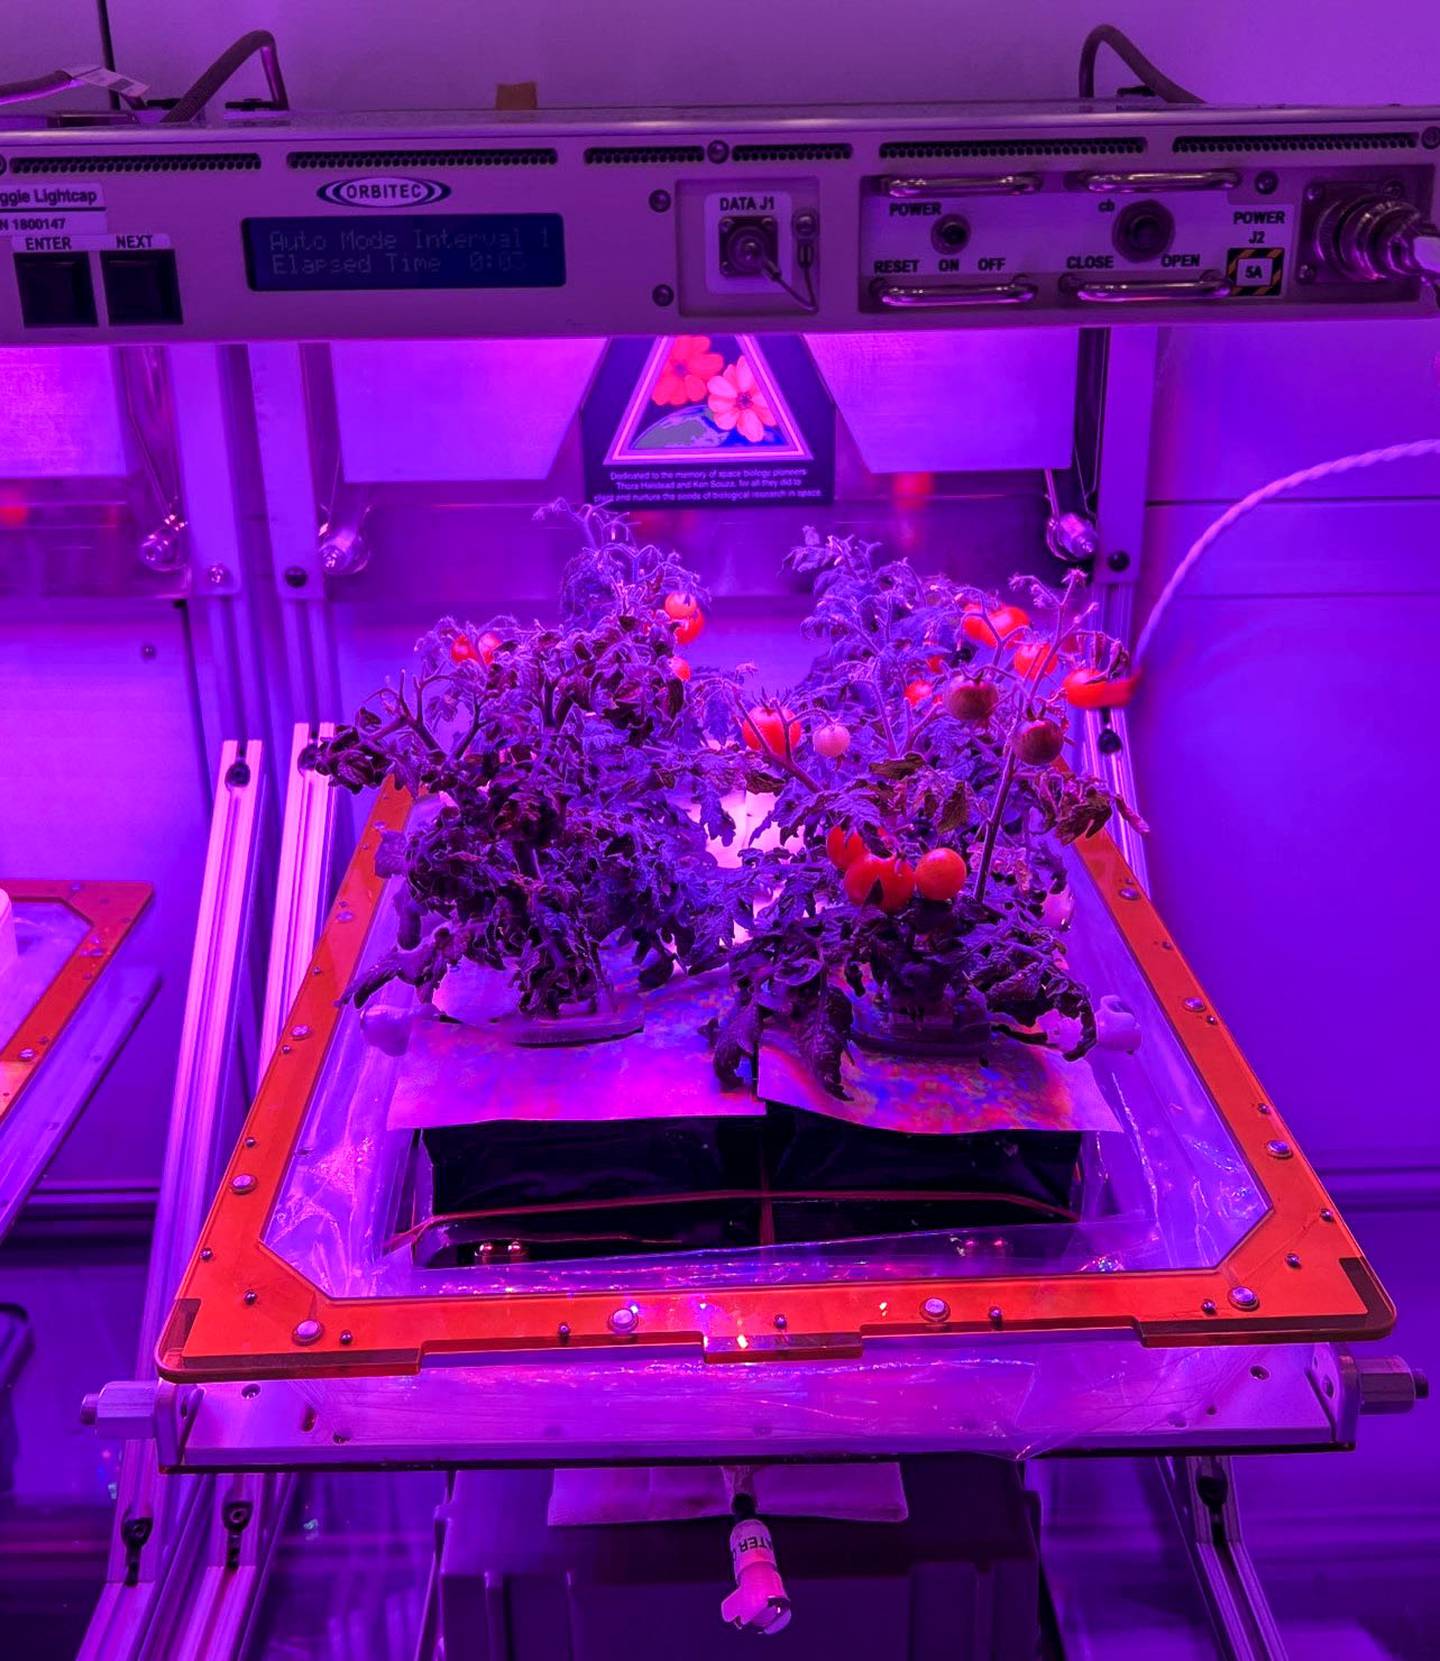 Cultivo de tomates en la Estación Espacial Internacional